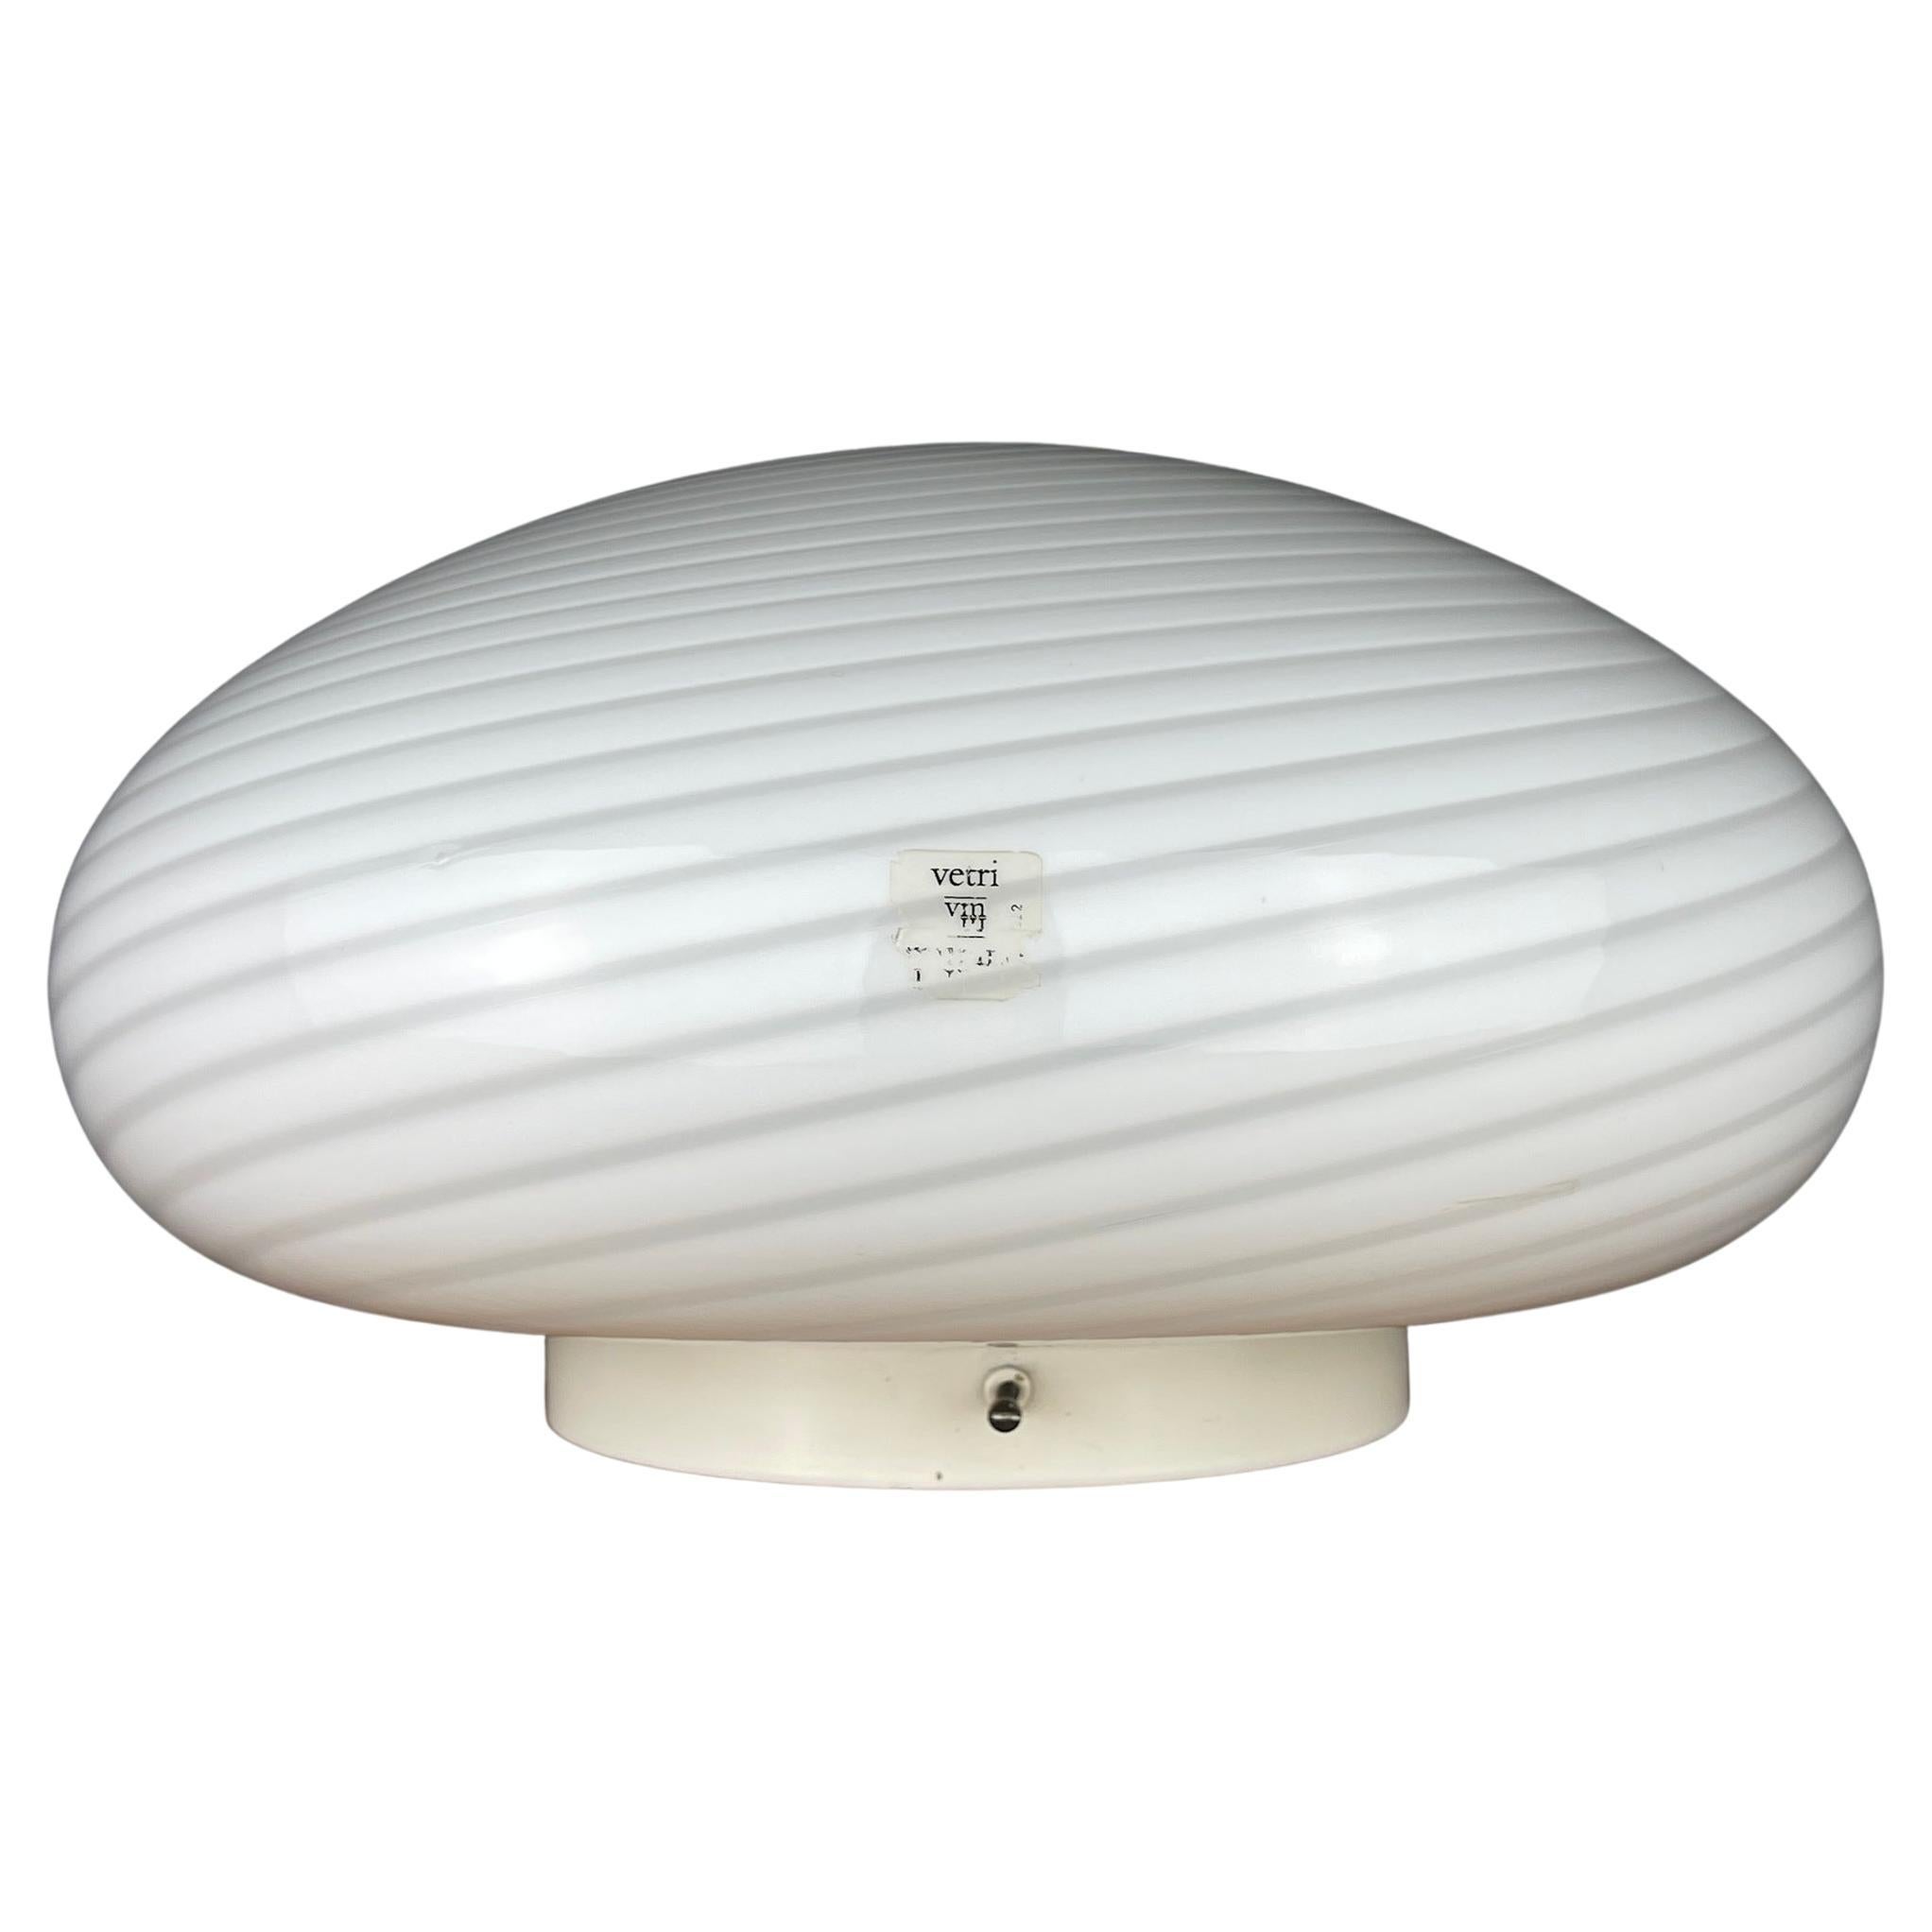 Classic swirl white murano glass ceiling or wall lamp Vetry Murano 022 by Venini